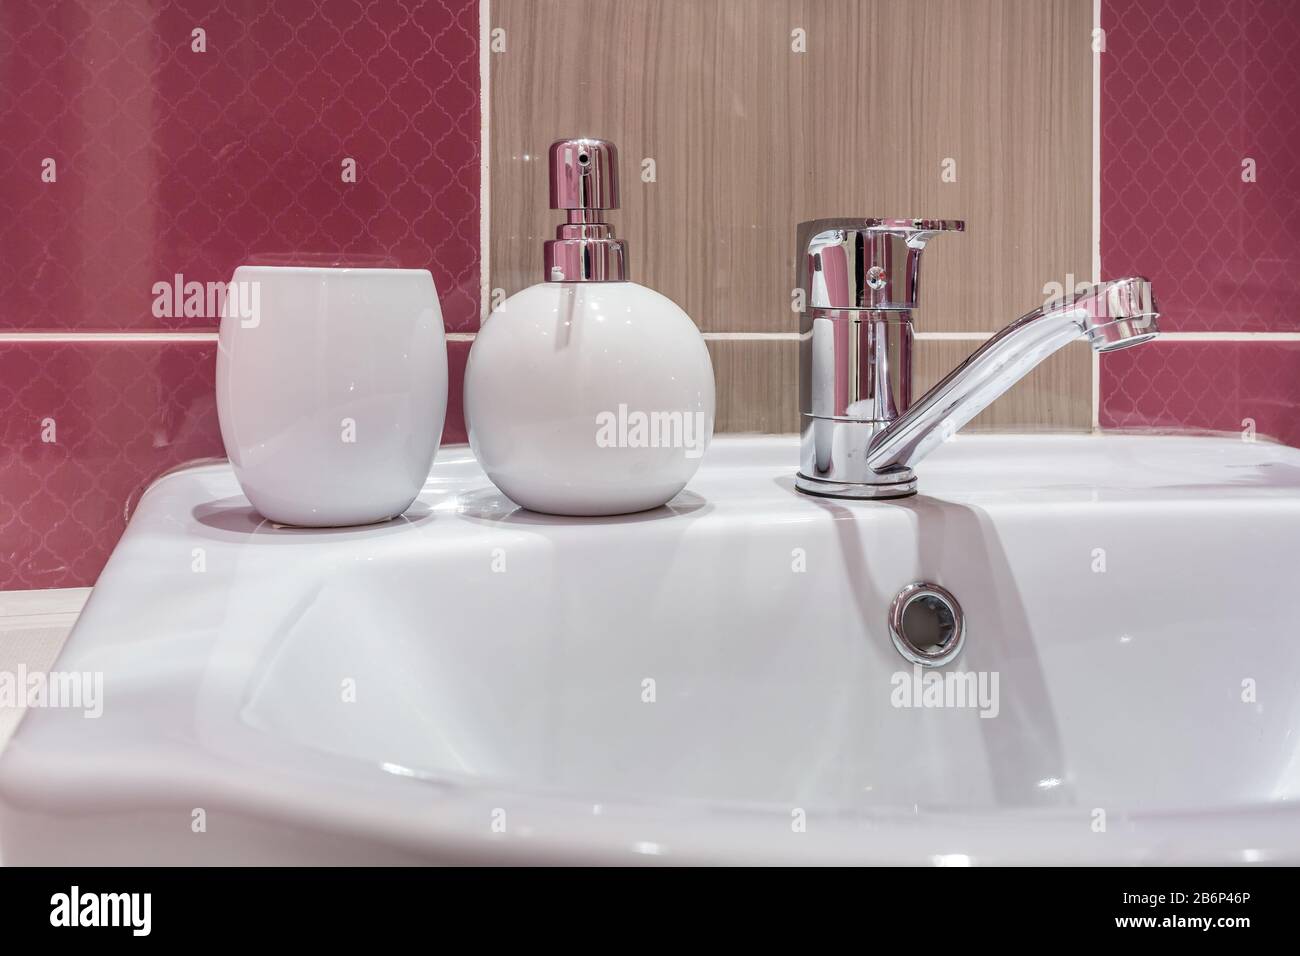 Seife und Shampoo-Dispenser in der Nähe Von Keramischen Wasserhahn-Spüle  mit Hahn im teuren Loft-Bad oder in der Küche Stockfotografie - Alamy